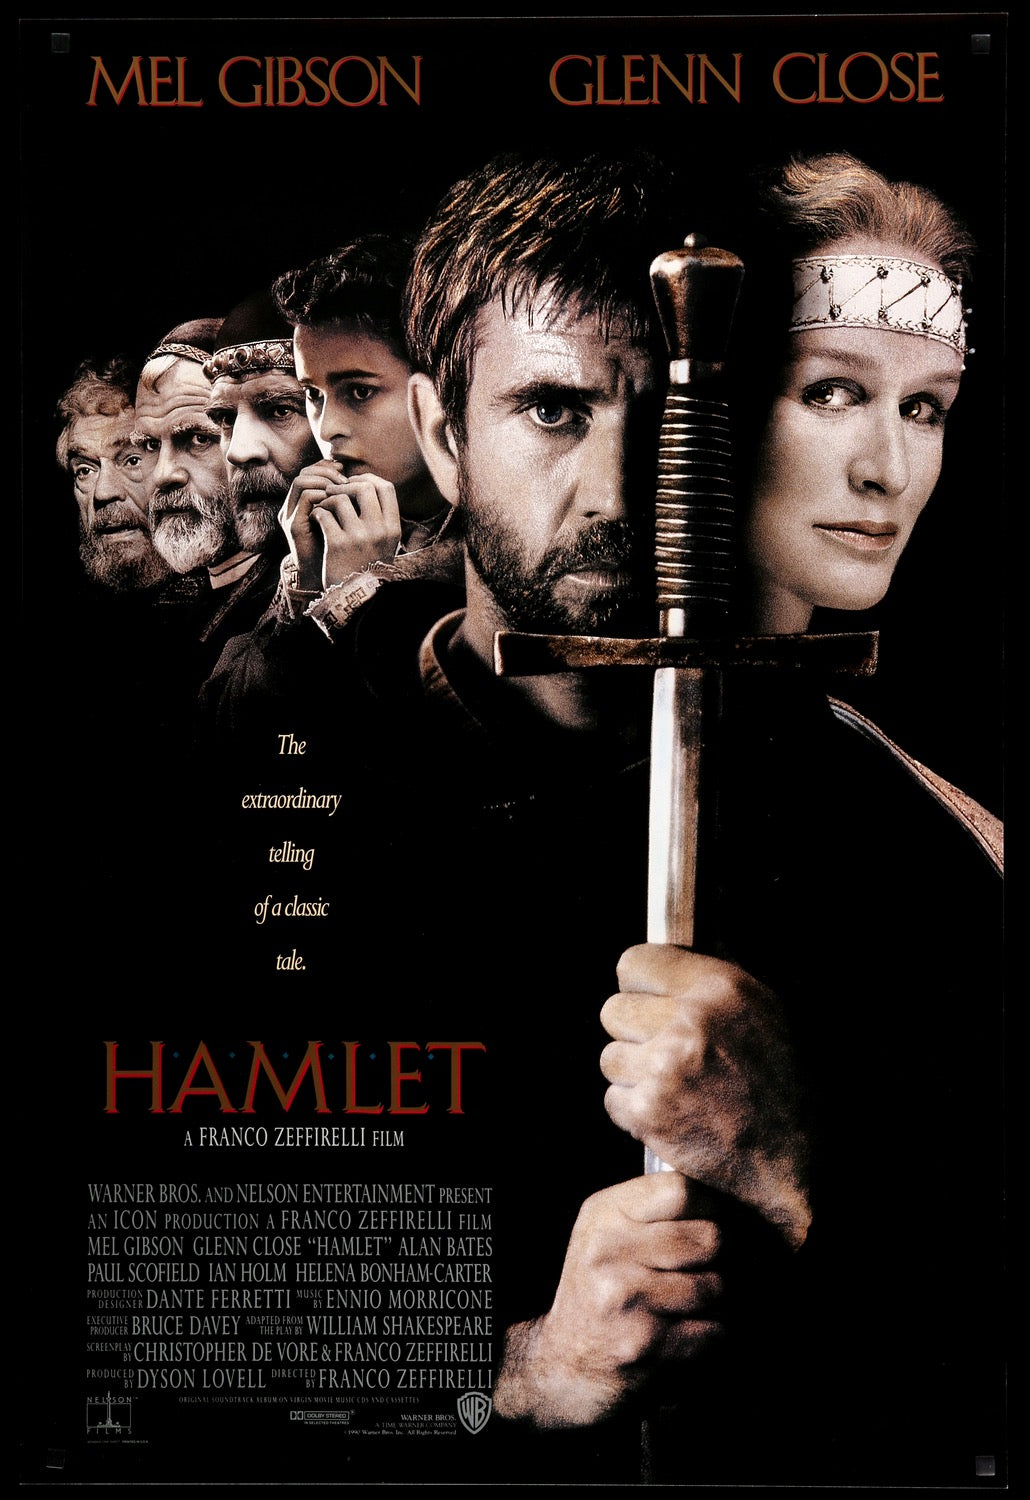 hamlet 1996 poster